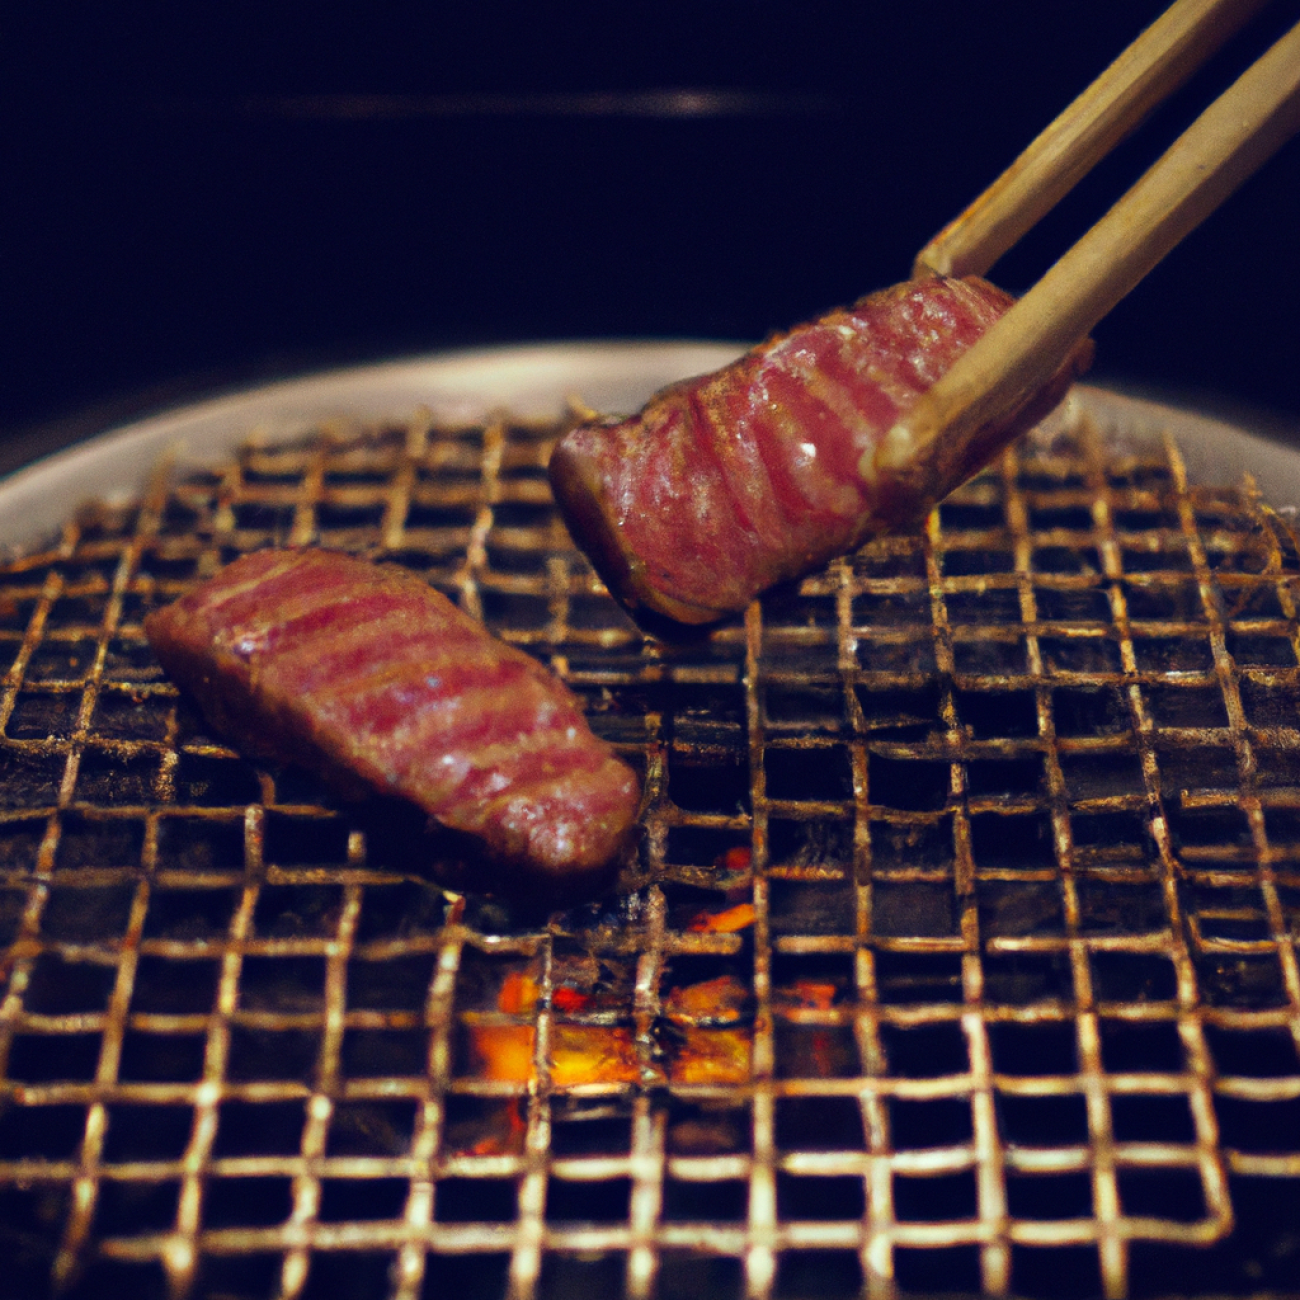 4. Kobe - Mistrovská grilovaná‌ masa a tradiční japonské pokrmy